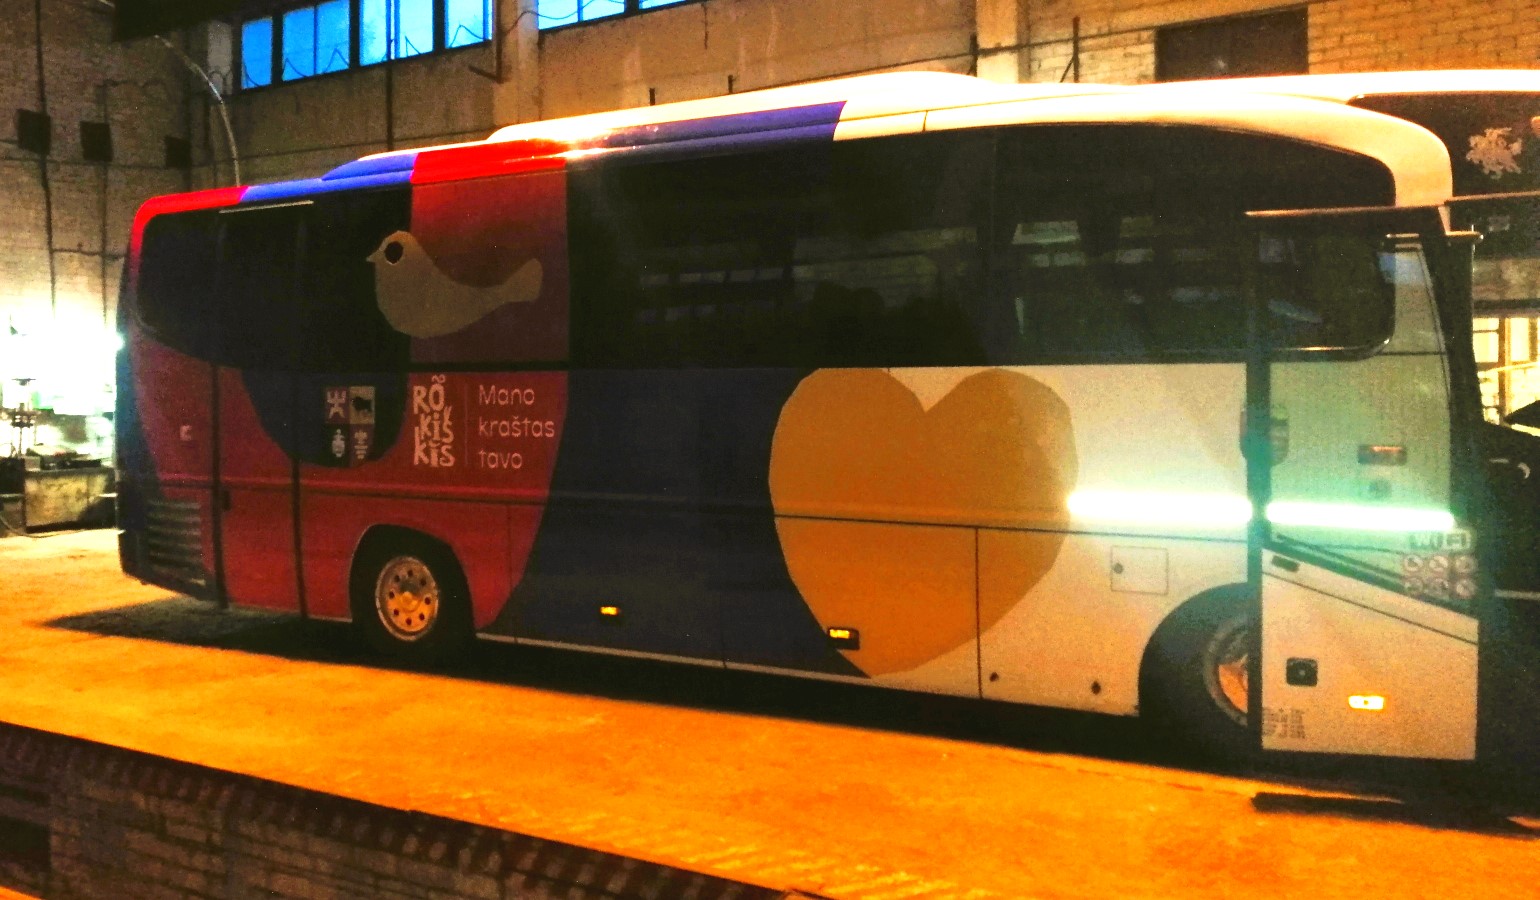 Rokiškio logotipas ir šūkis – ant tarpmiestinio autobuso